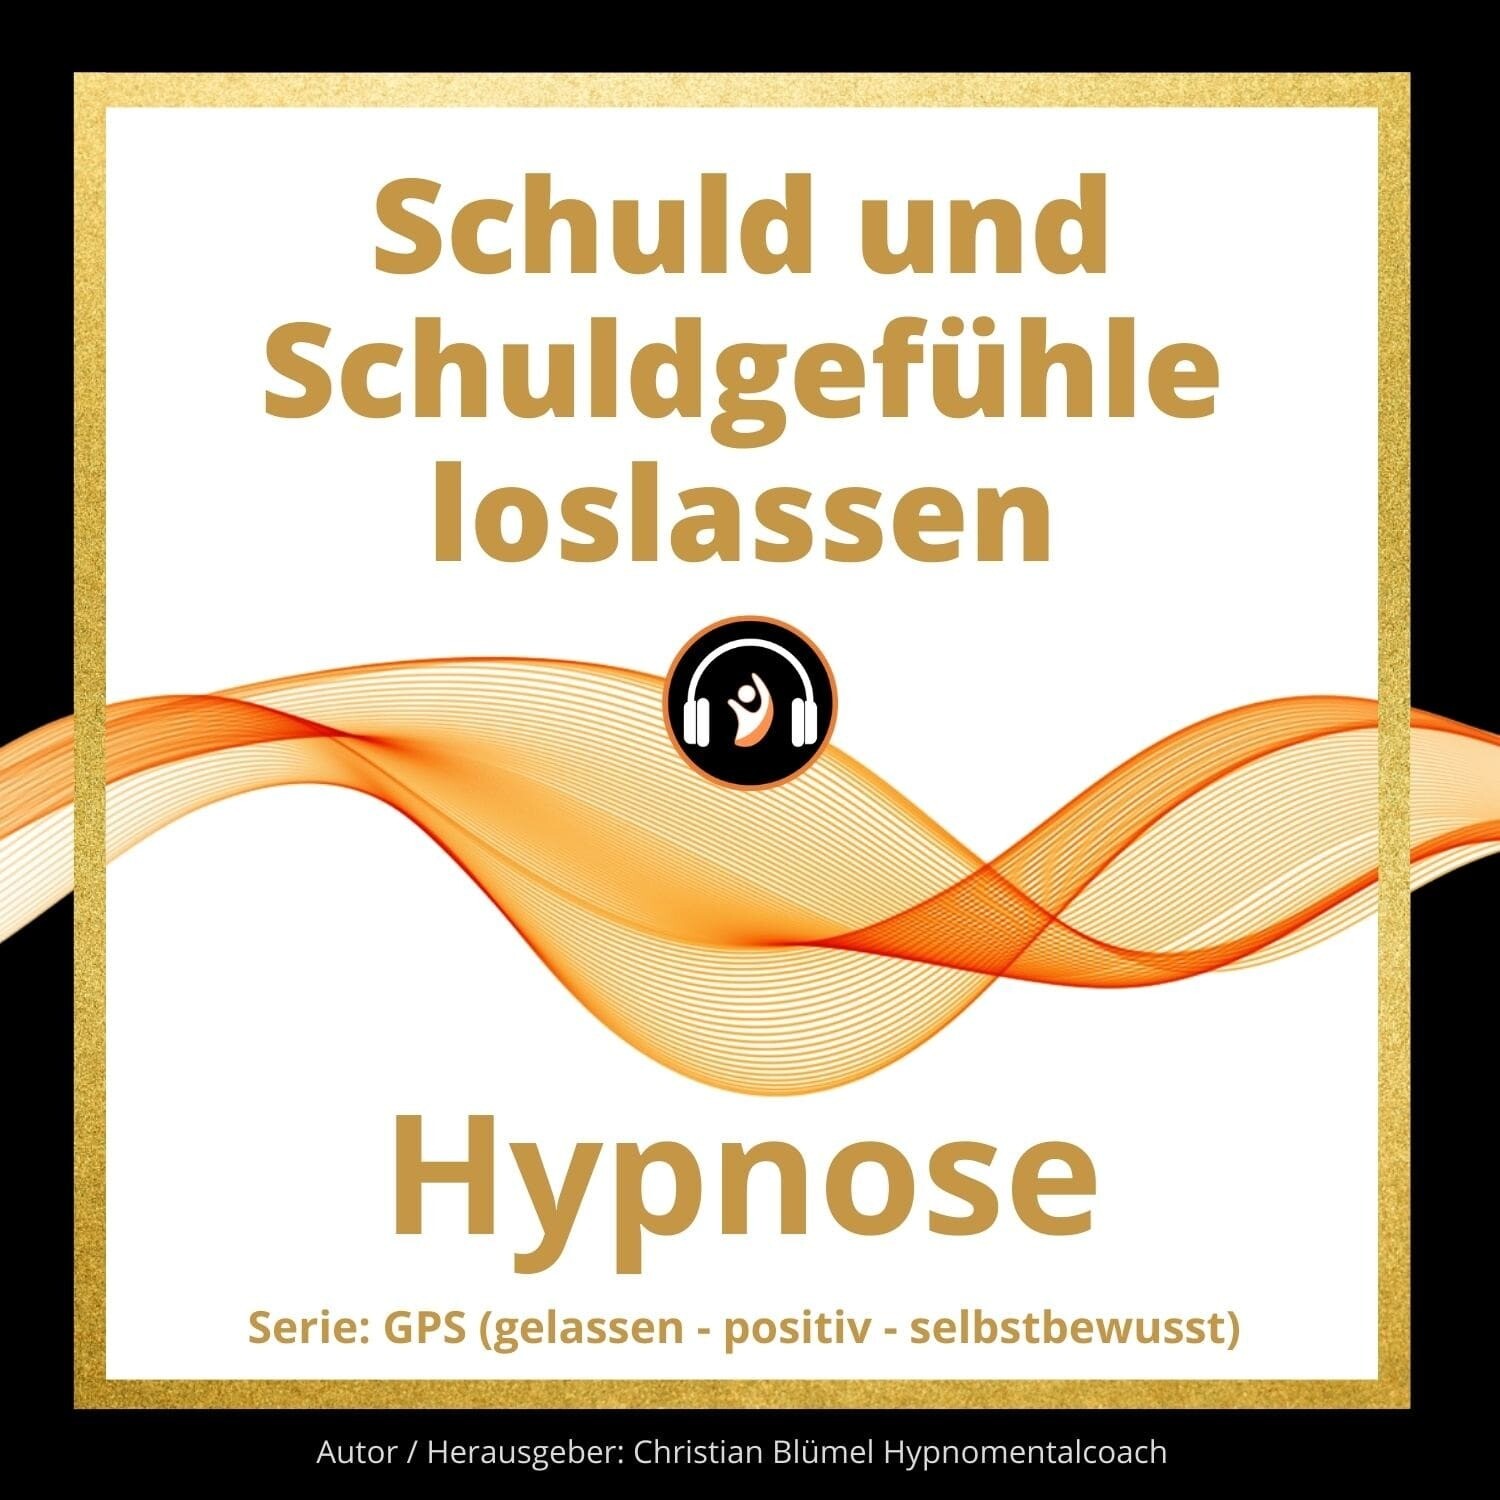 Audio Hypnose: Schuld und Schuldgefühle loslassen - GPS Hypnose